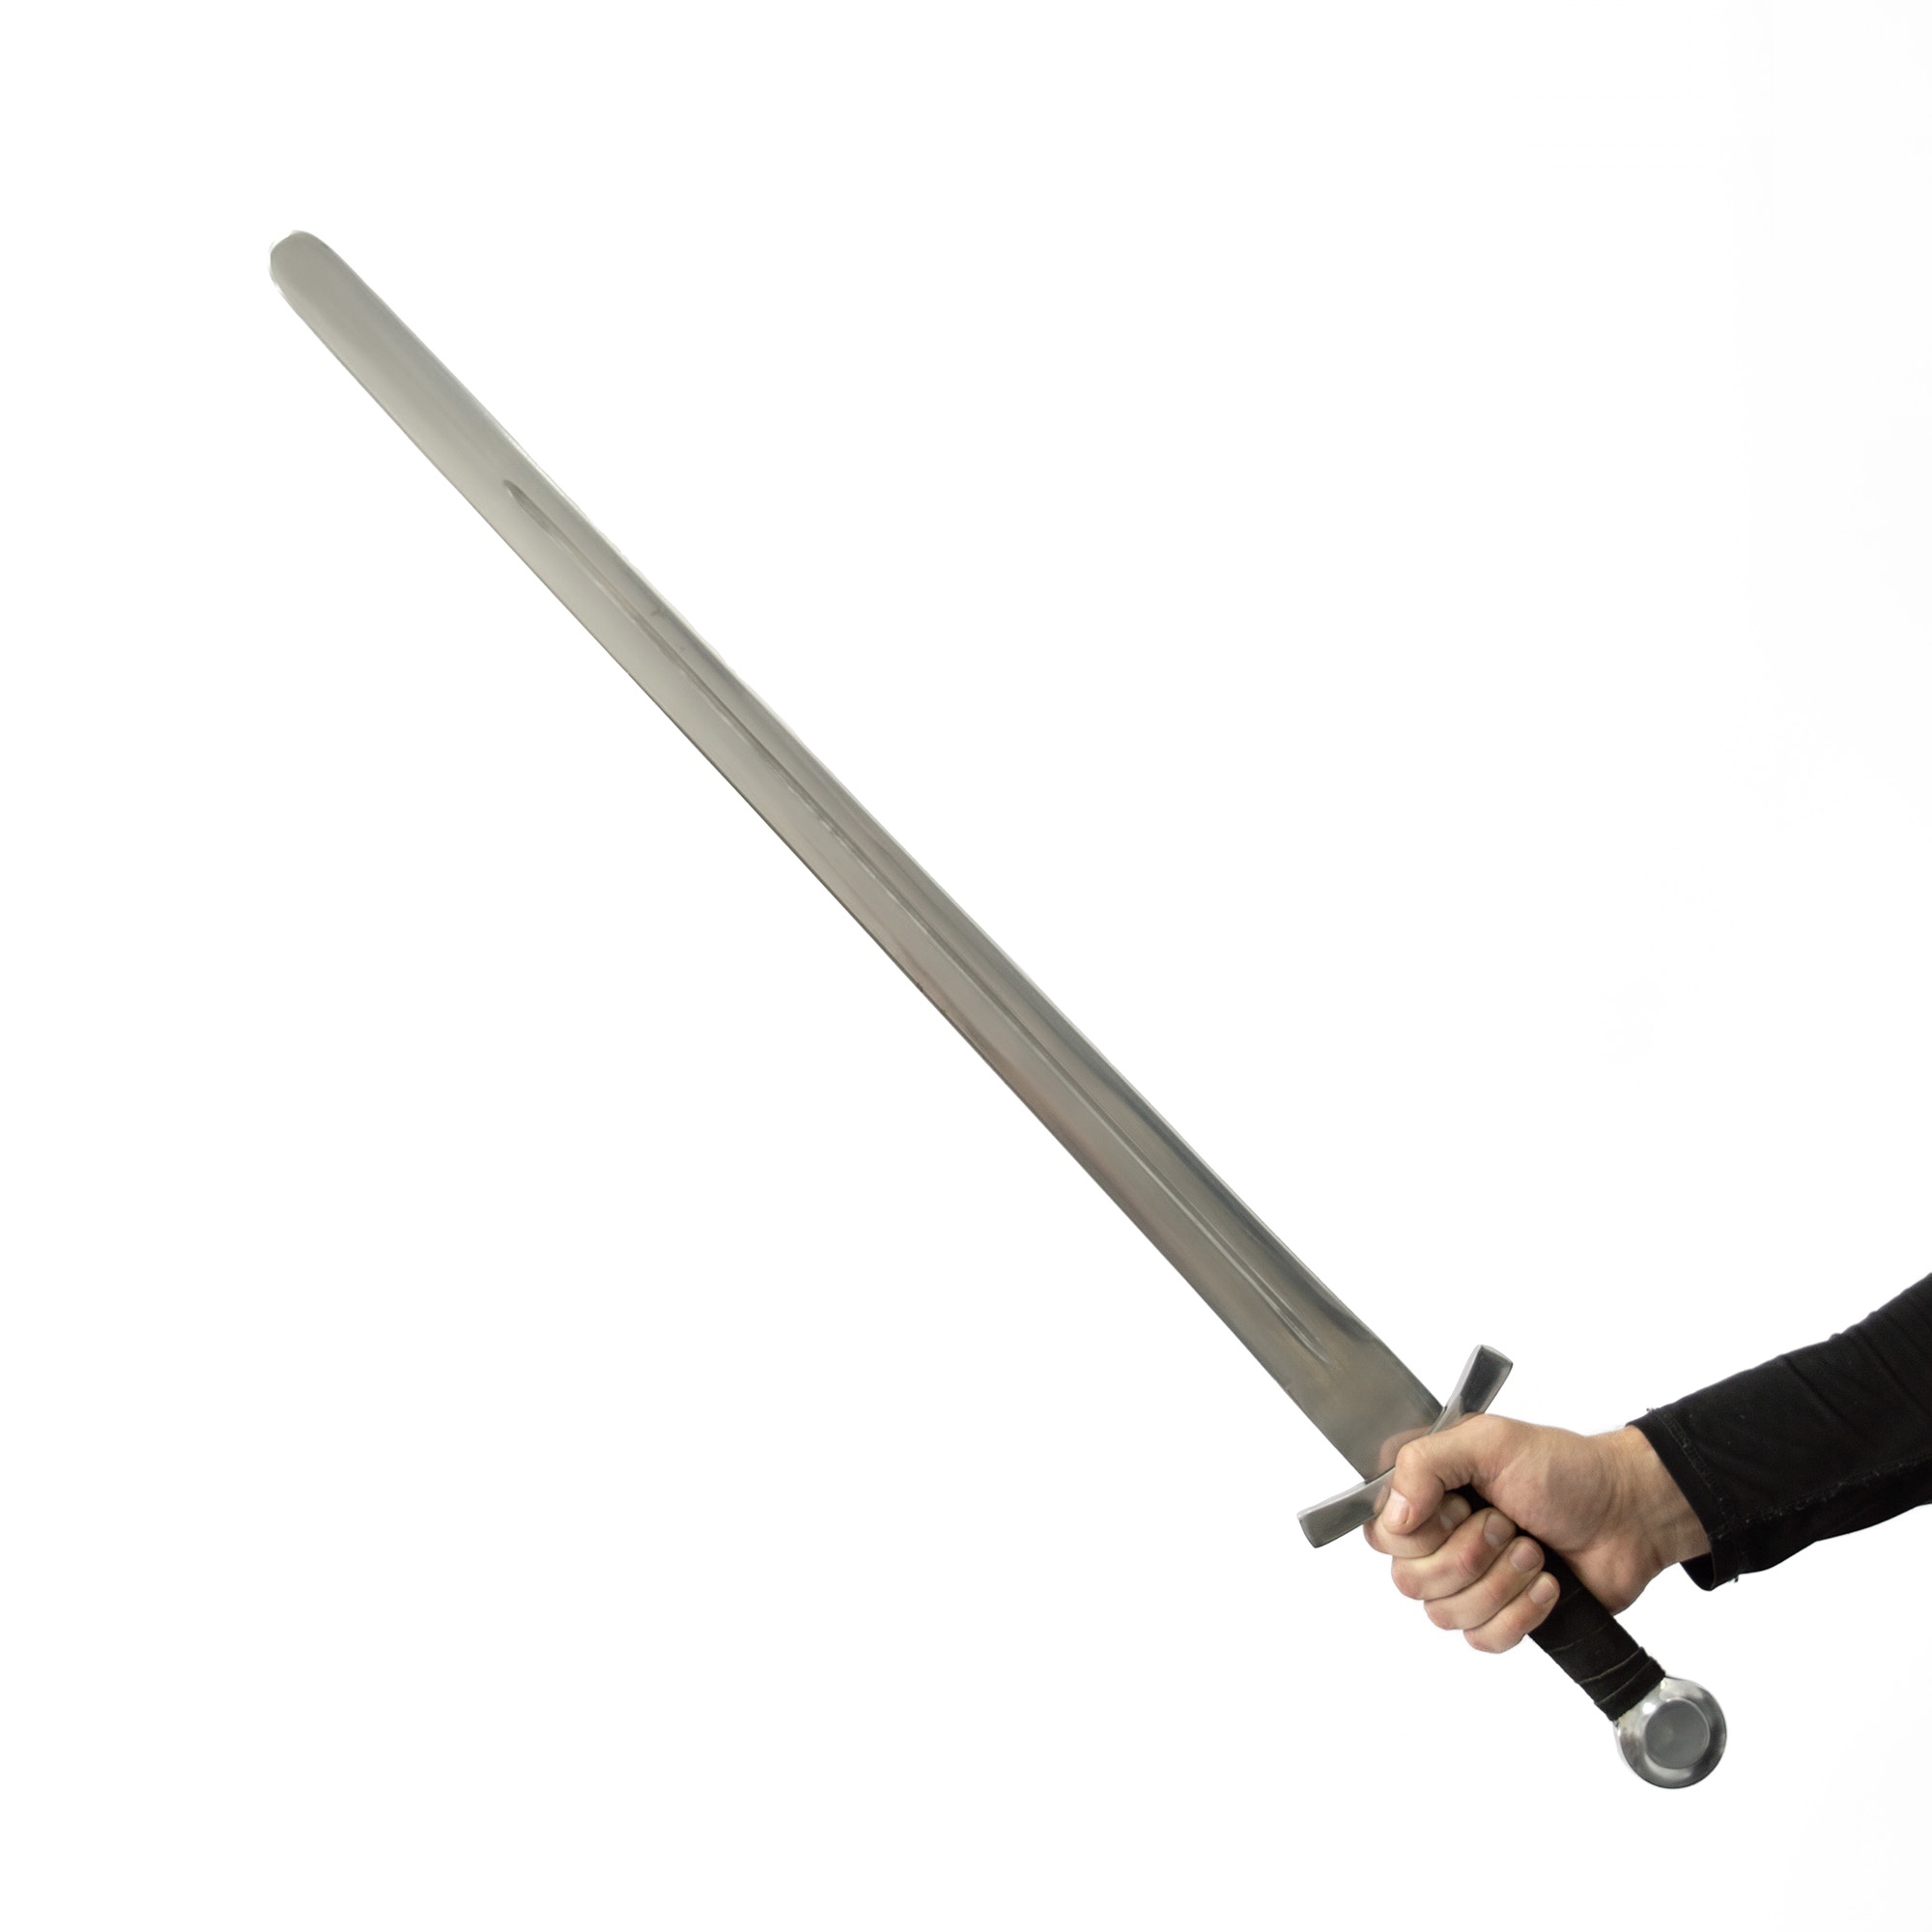 WMFC sword for pro-fights full length